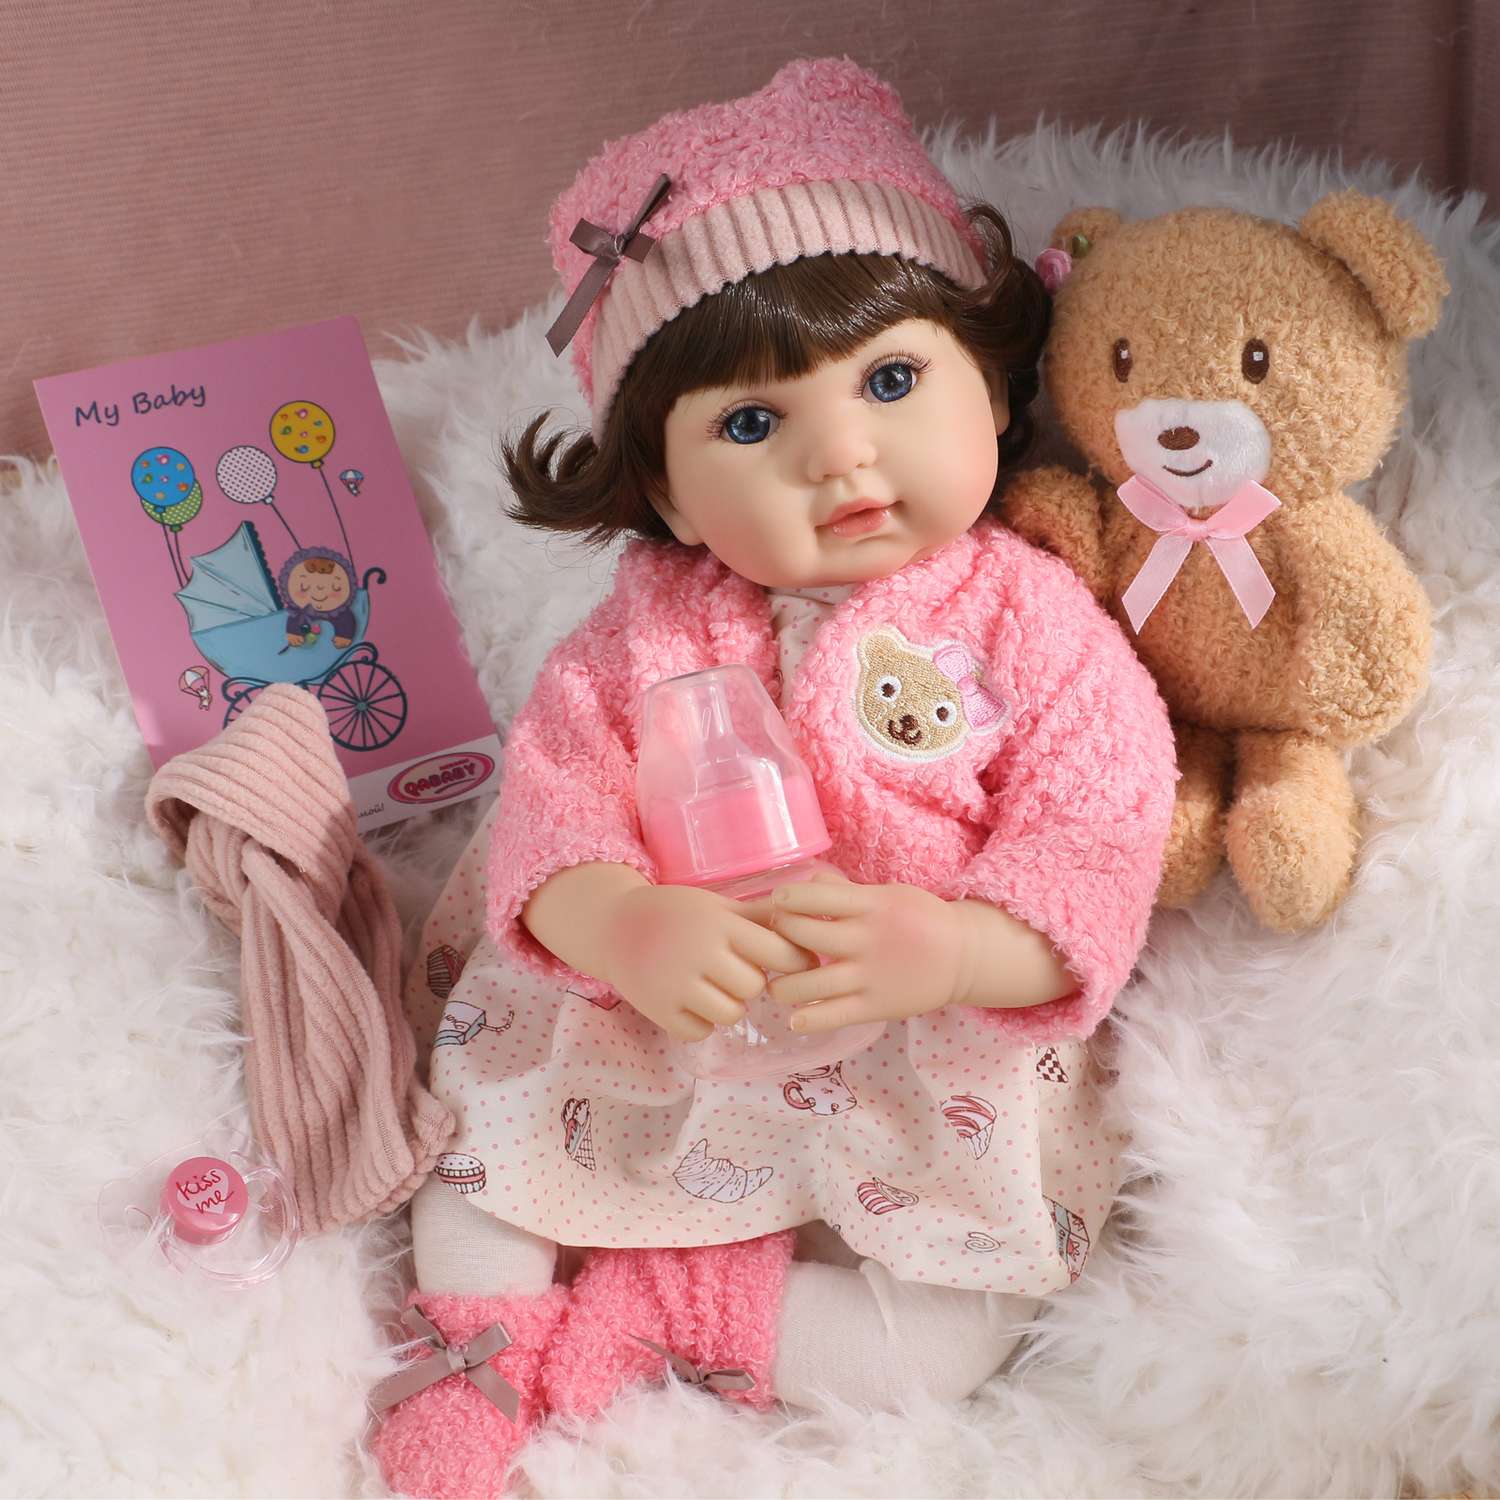 Кукла Реборн QA BABY Василиса девочка большая пупс набор игрушки для девочки 42 см 45006 - фото 1